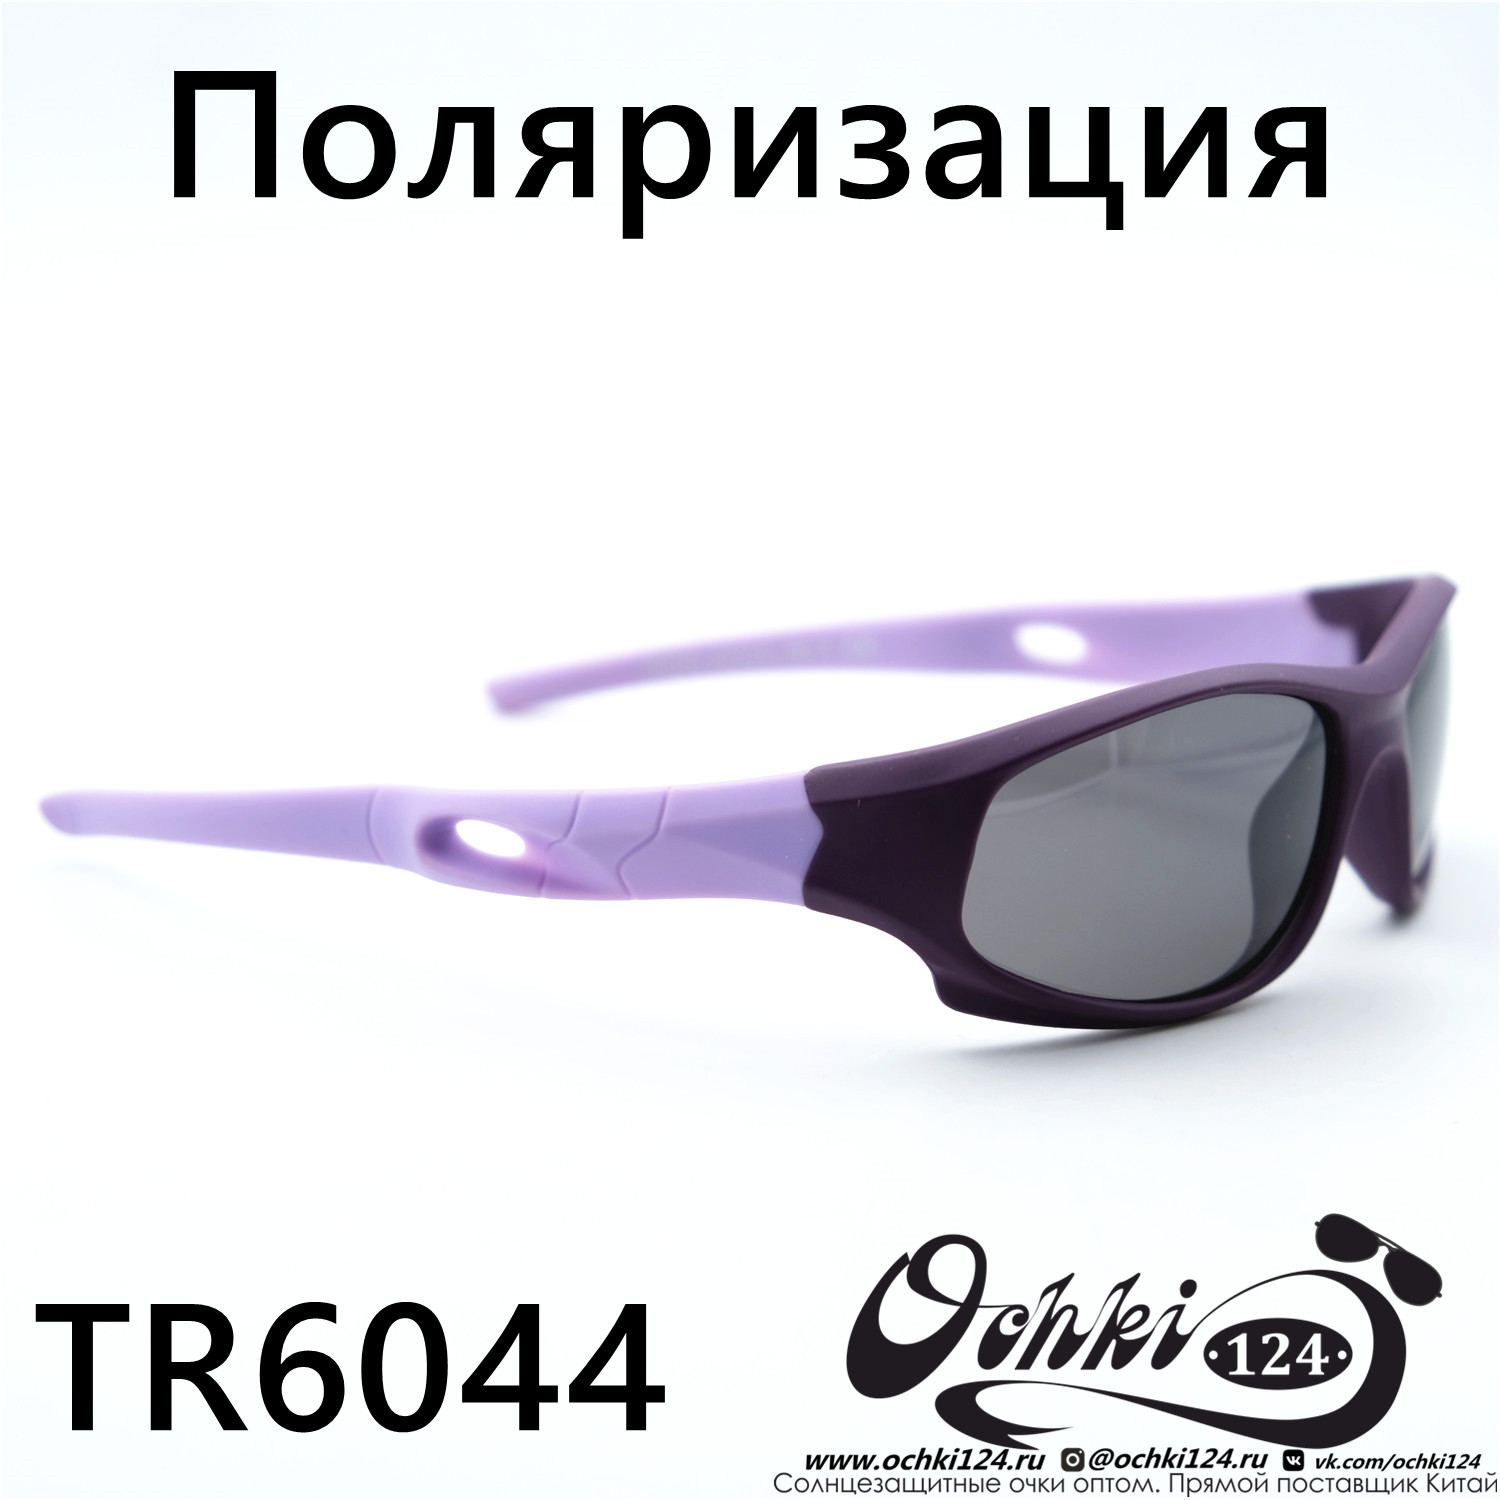  Солнцезащитные очки картинка 2023 Детские Поляризованные Спорт  TR6044-C5 